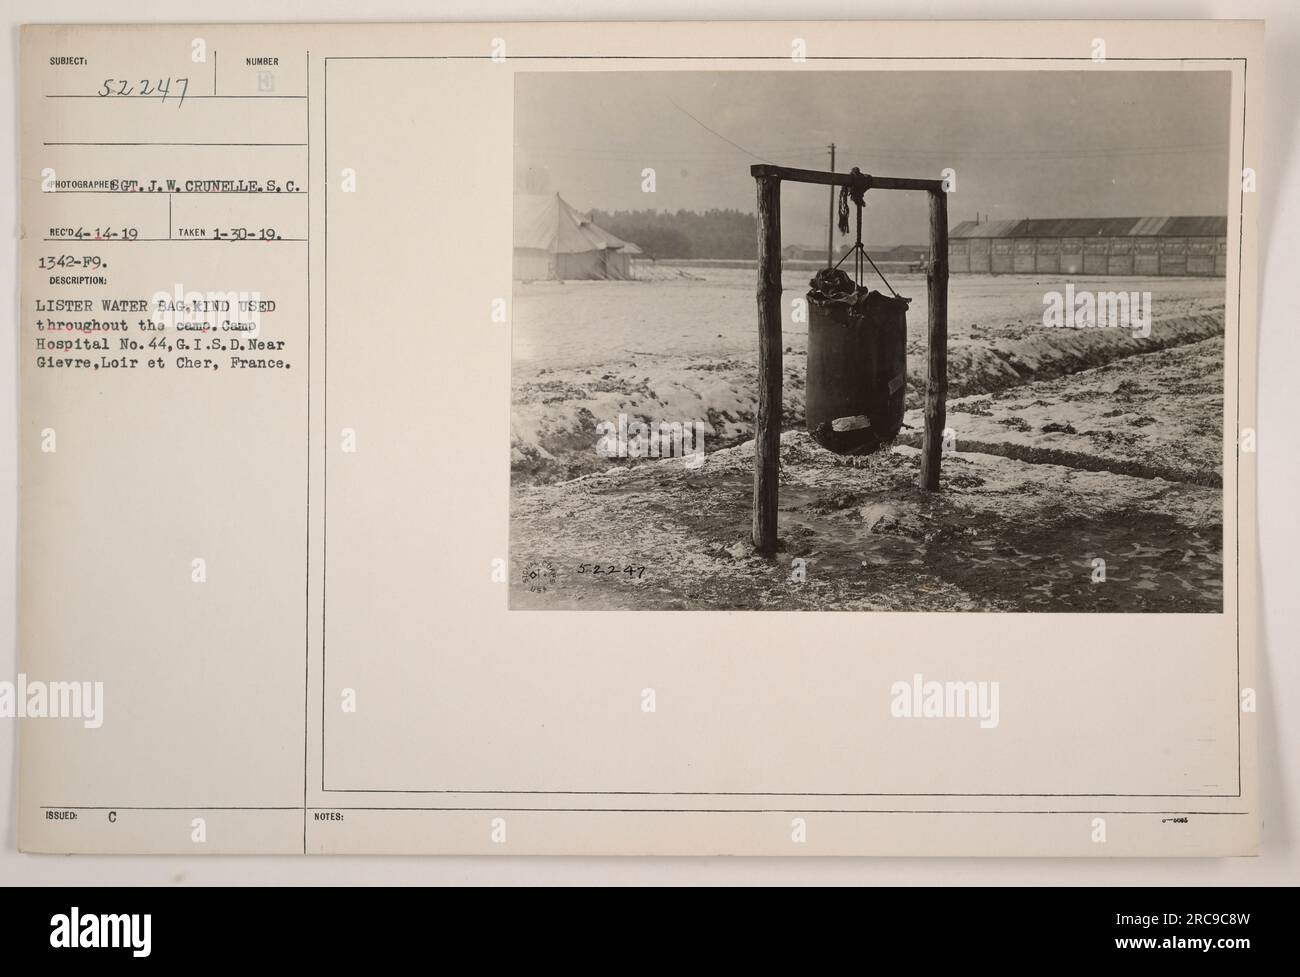 Auf diesem Foto ist ein Wasserbeutel von Lister abgebildet, der im gesamten Camp verwendet wird. Sie ist im Camp Hospital No. 44, G.I.U.D., das sich in der Nähe von Gievre, Loire et Cher, Frankreich befindet, zu sehen. Das Foto wurde am 30. Januar 1919 aufgenommen. Dieses Bild ist unter Subjekt 52247 dokumentiert und wurde von Fotograf J. W. Crunelle, S.C. aufgenommen Stockfoto